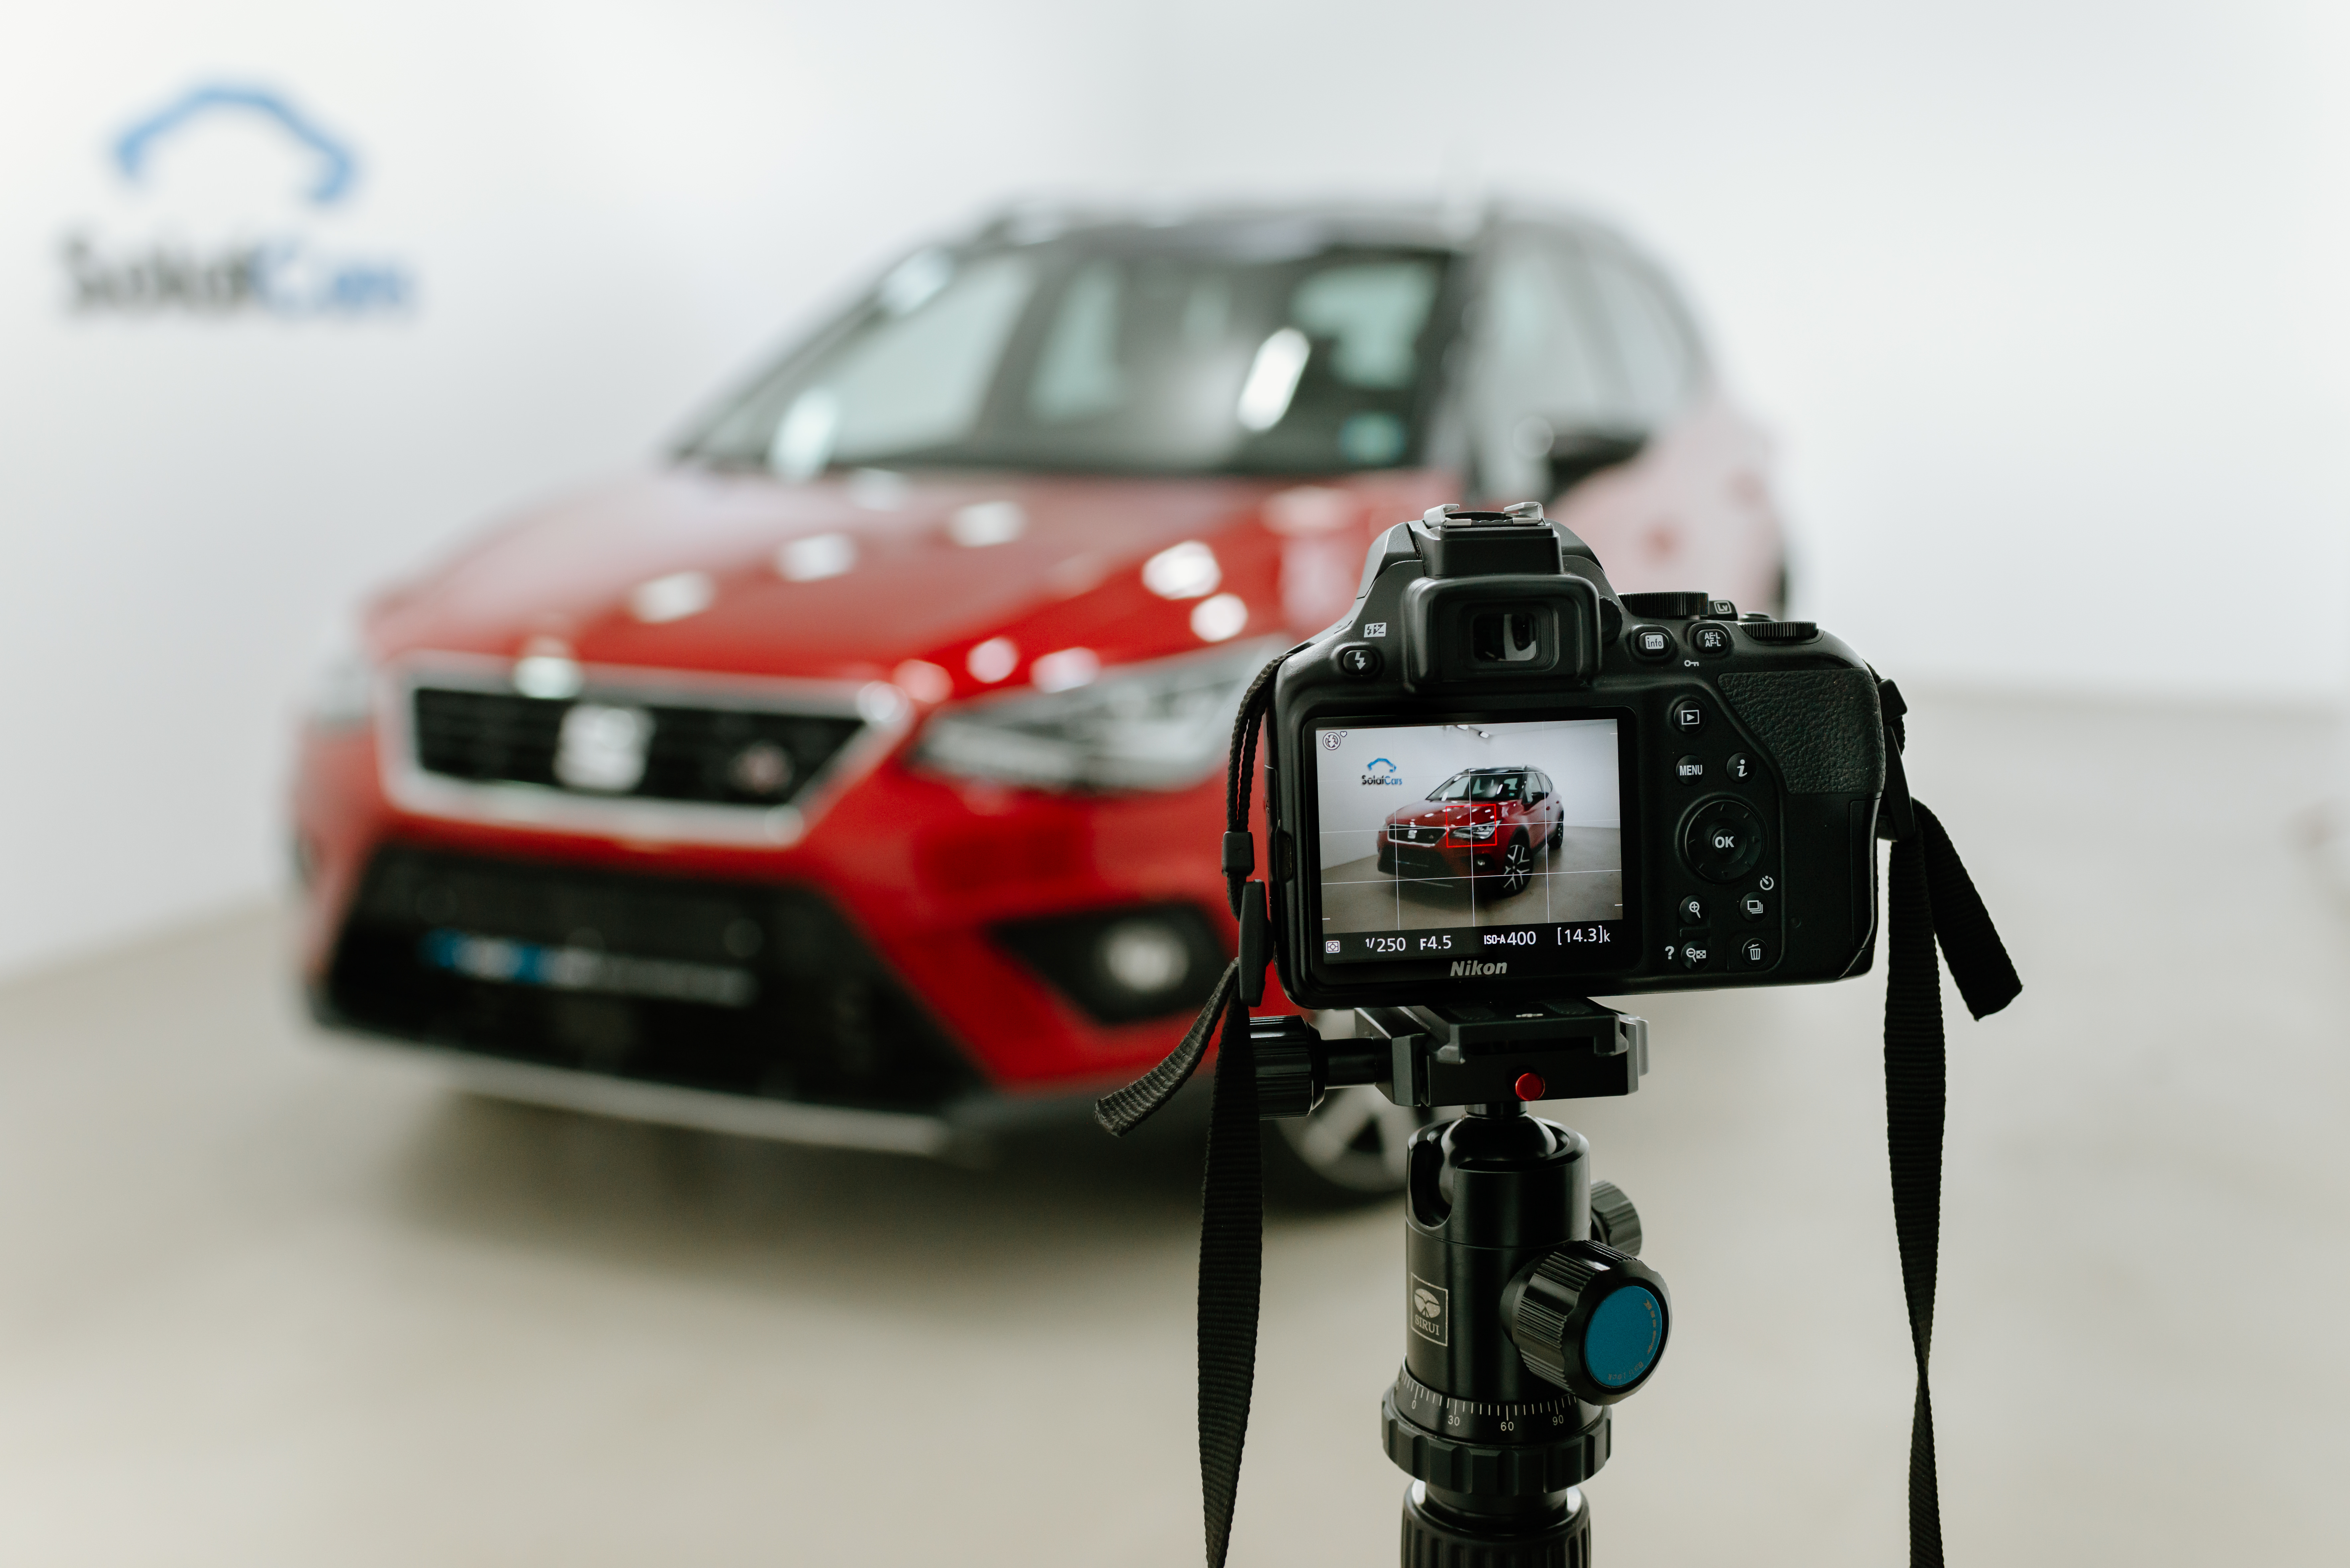 Dslr profi fényképezőgép állványra helyezve egy piros autó előtt